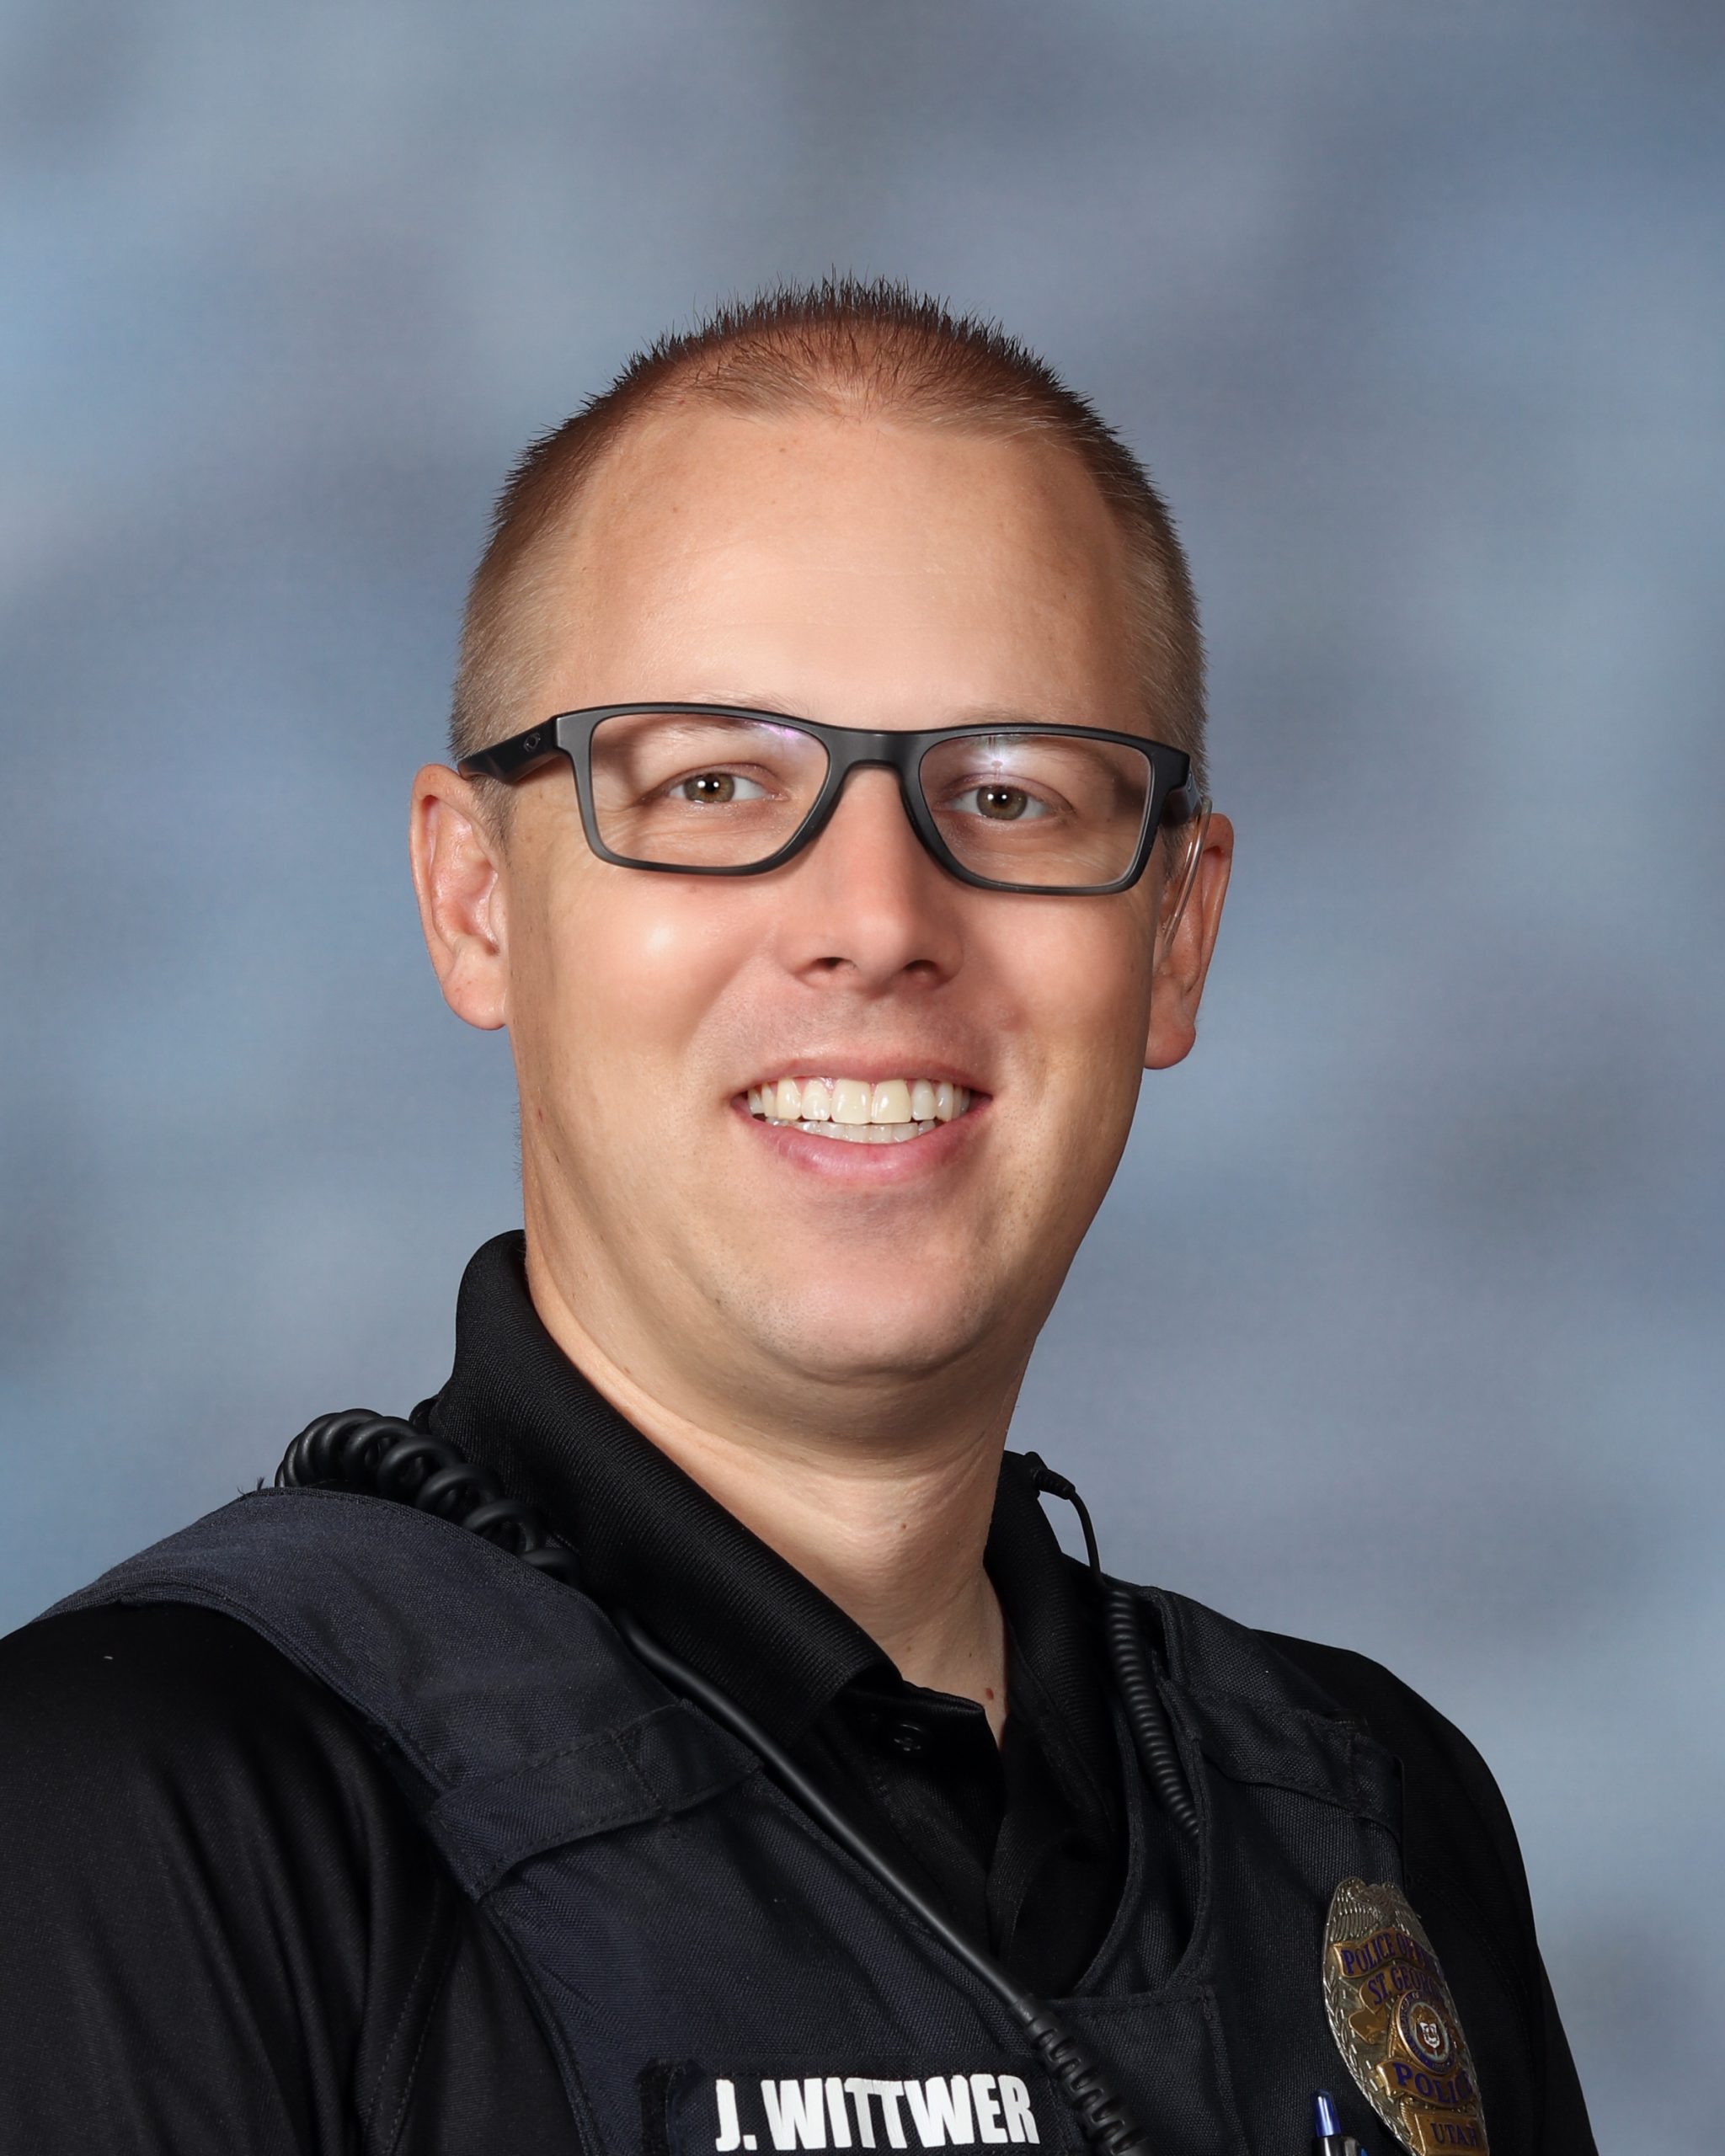 Officer Wittwer : School Resource Officer